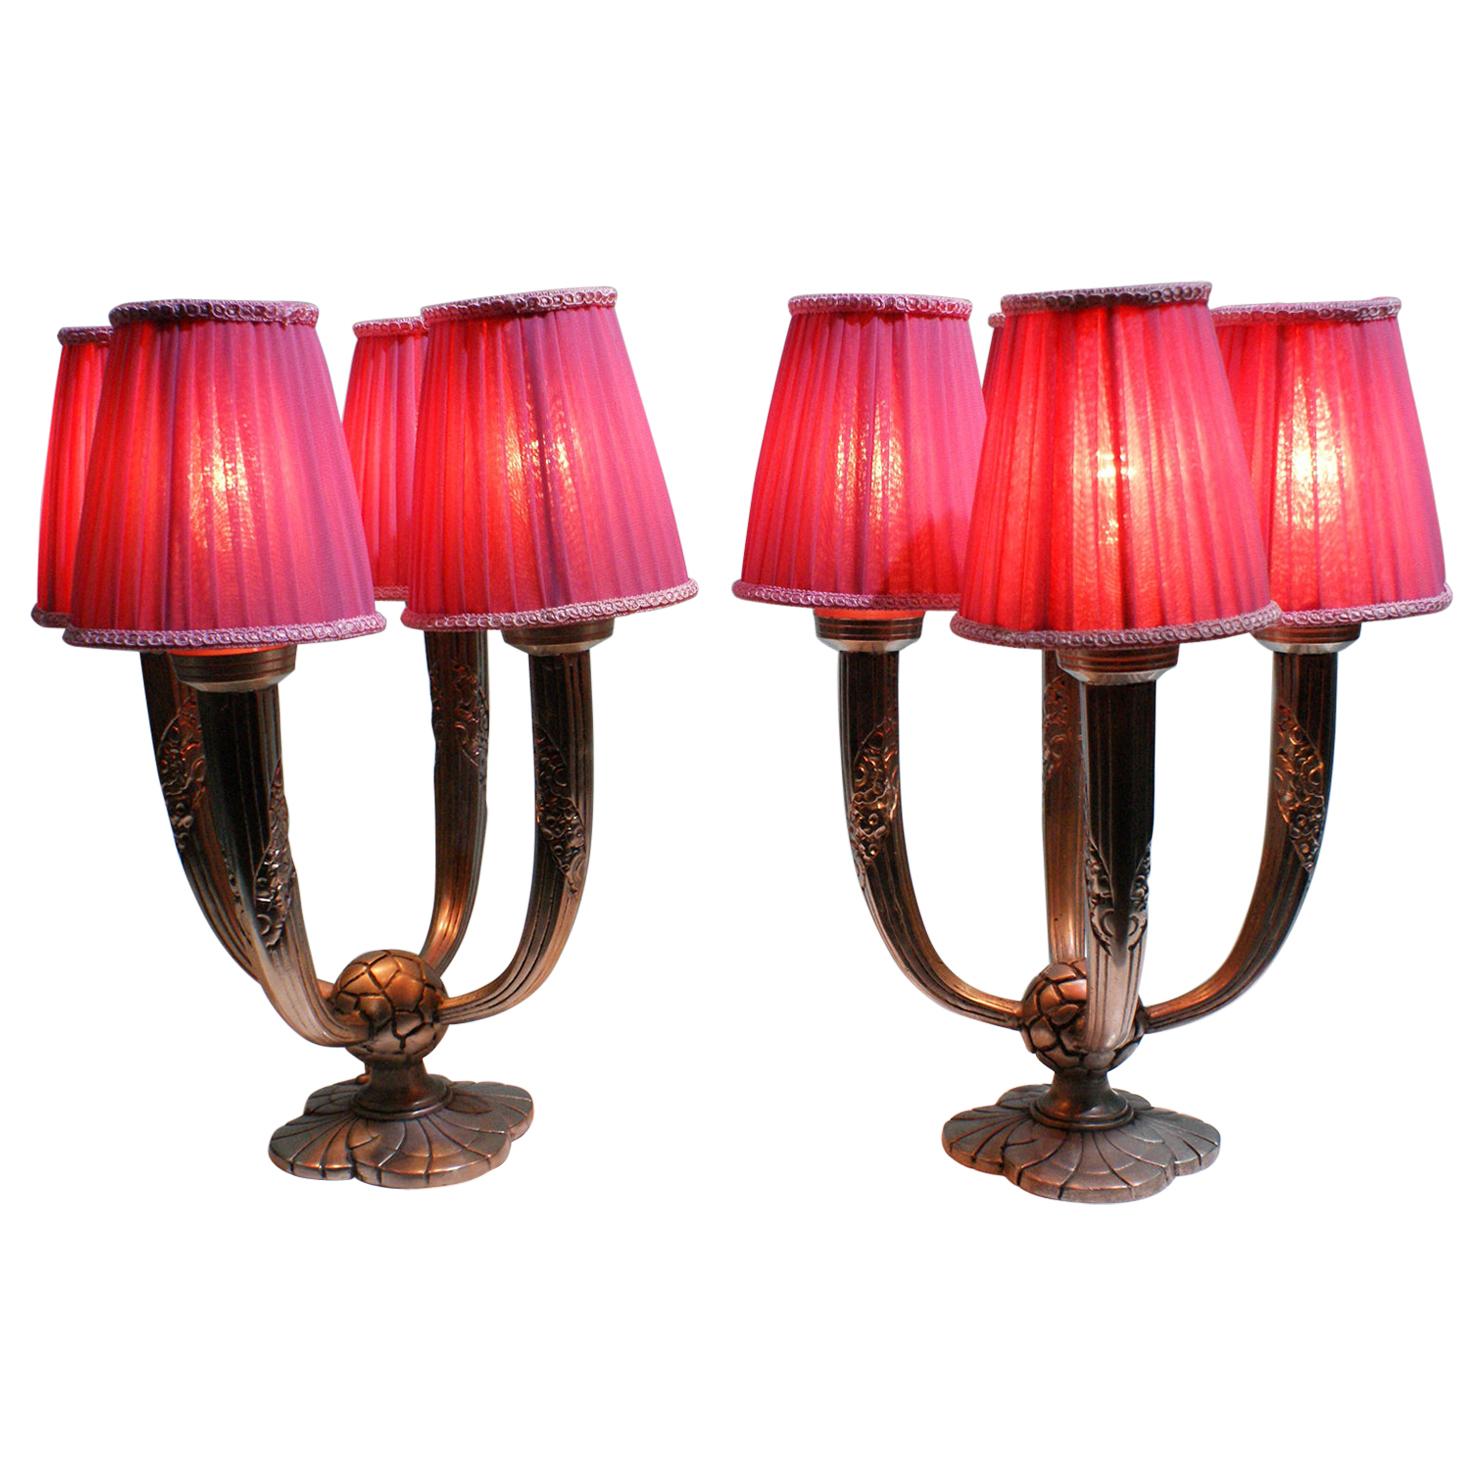 Paar elegante Art-Deco-Tischlampen:: signiert "Limousin" 'Maker'